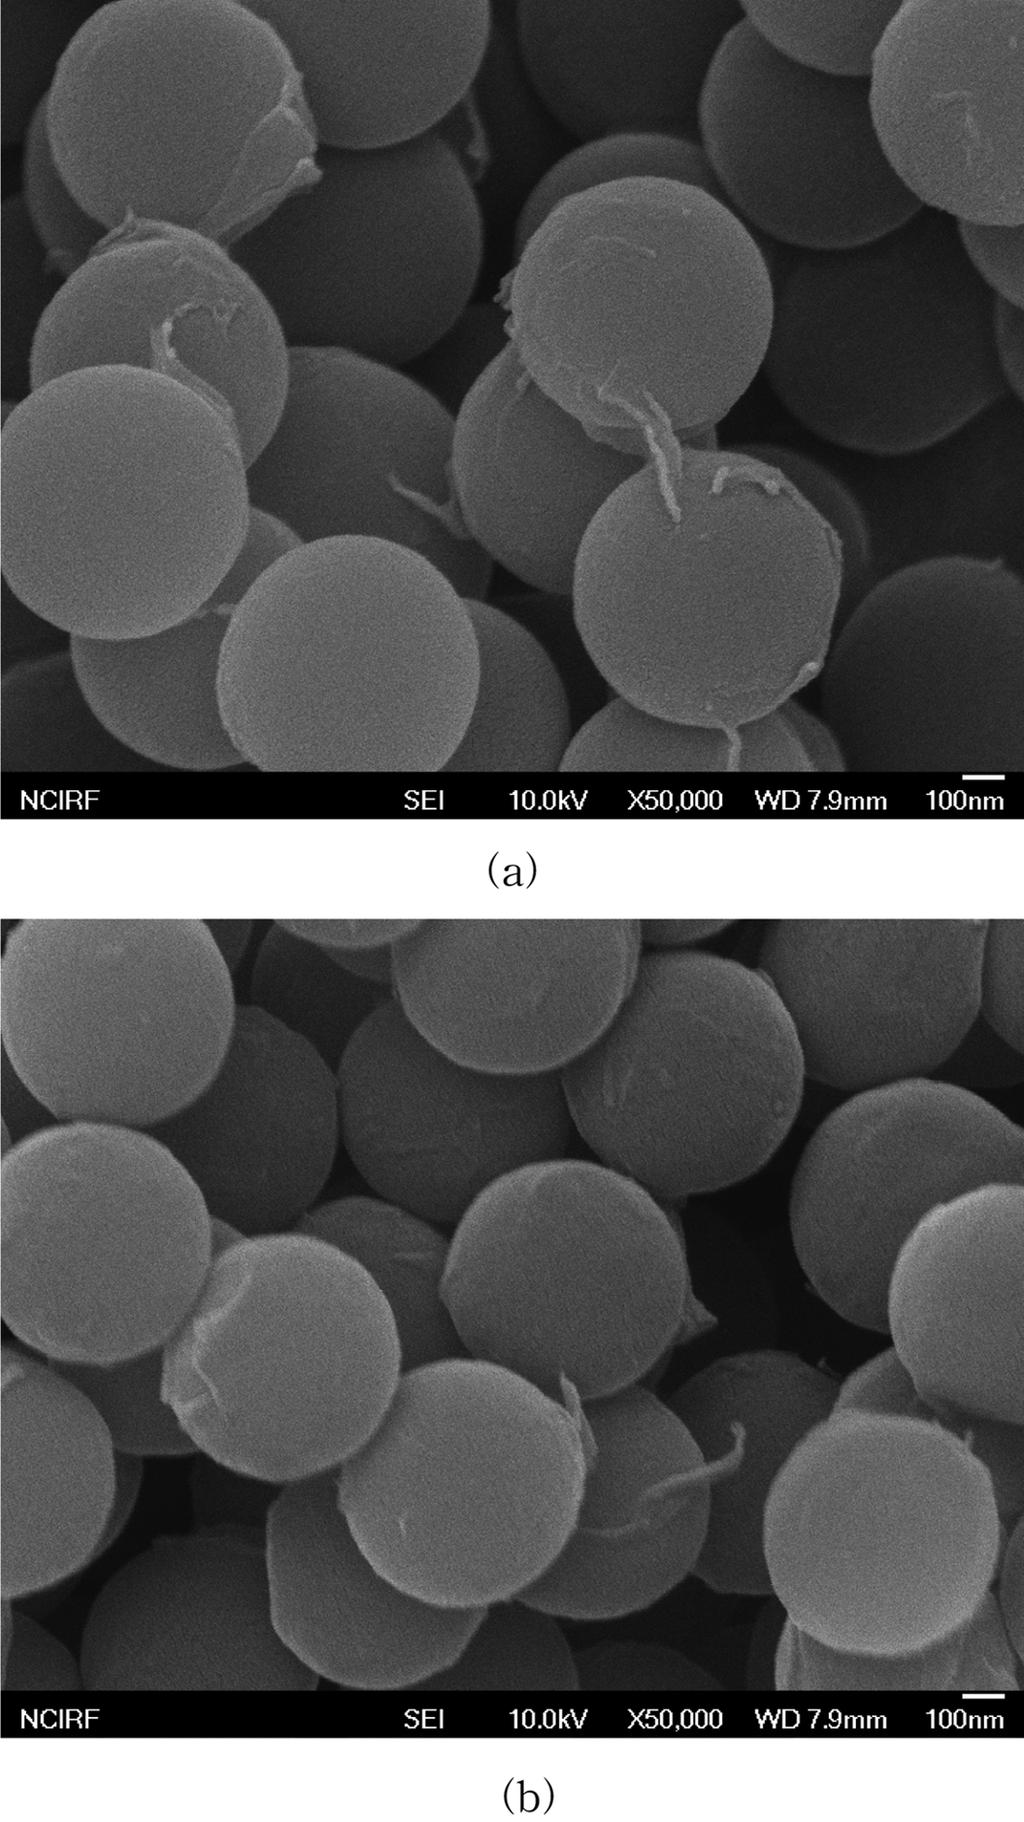 라텍스 기법에 의한 폴리스티렌/그래핀 나노필러 나노복합재료의 제조 및 물성 471 Figure 4. FTIR spectra of graphene nanofillers: (a) GO; (b) TRGO (thermally reduced GO); (c) PSS-RGO. 의 분해에 의한 질량 감소가 나타났고18 800 oc에서 질량의 47% 정도가 남았다.